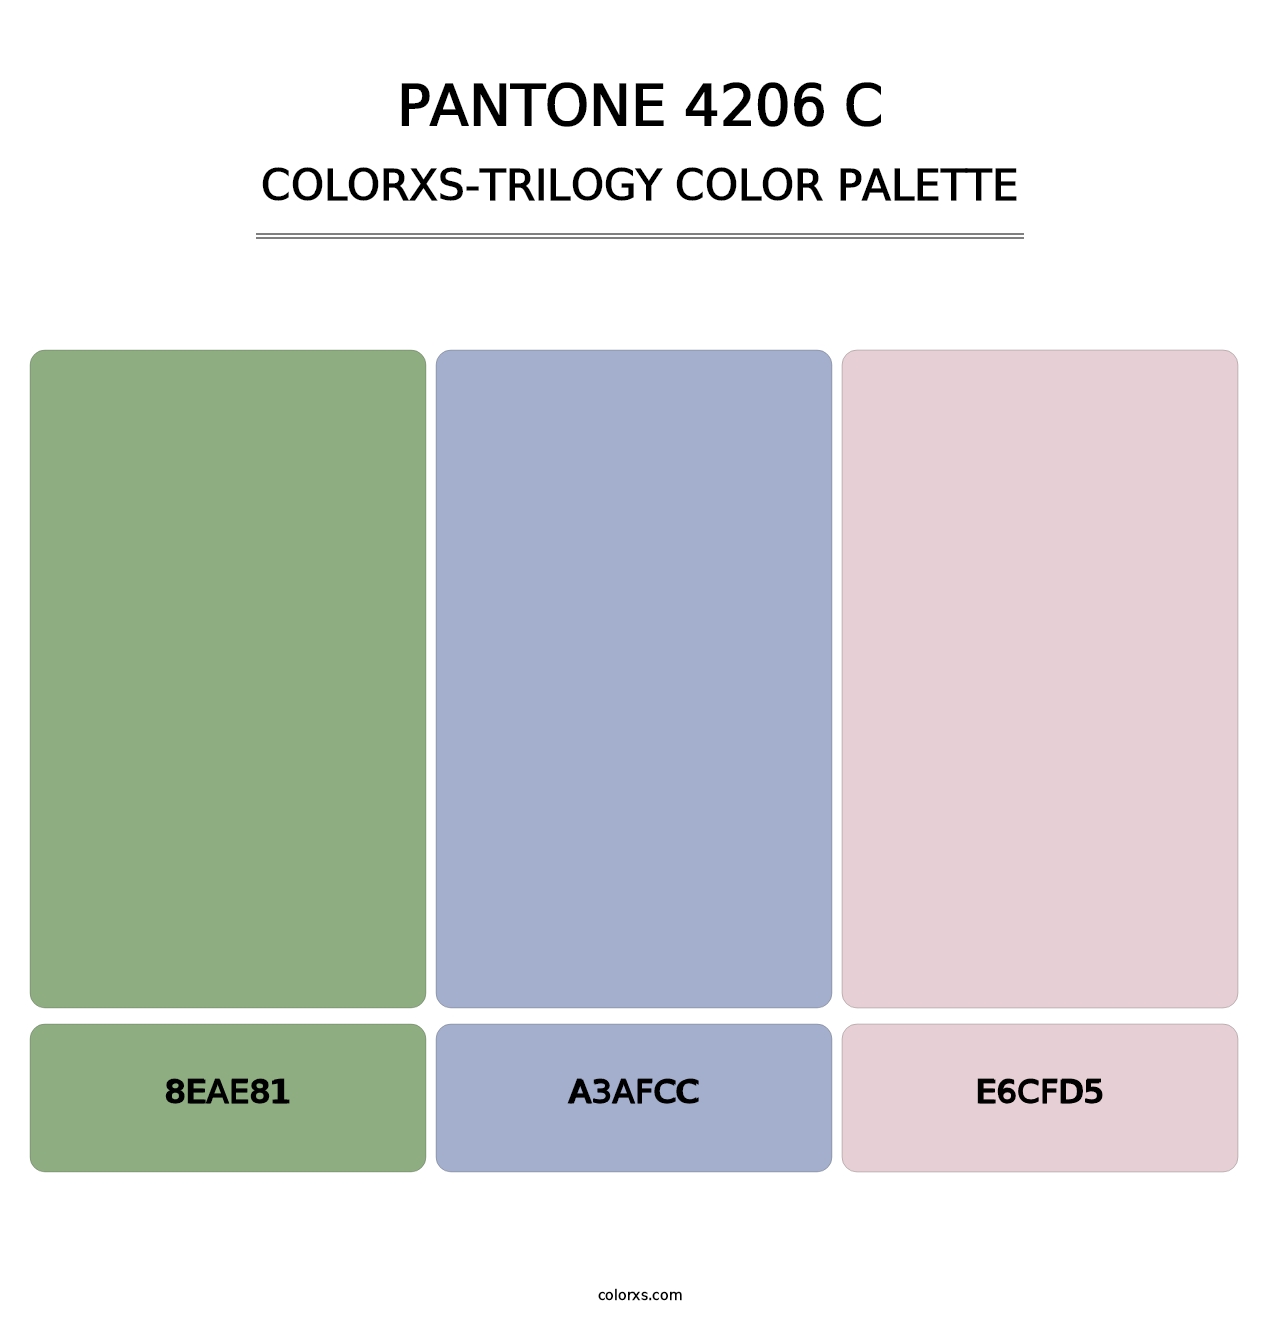 PANTONE 4206 C - Colorxs Trilogy Palette